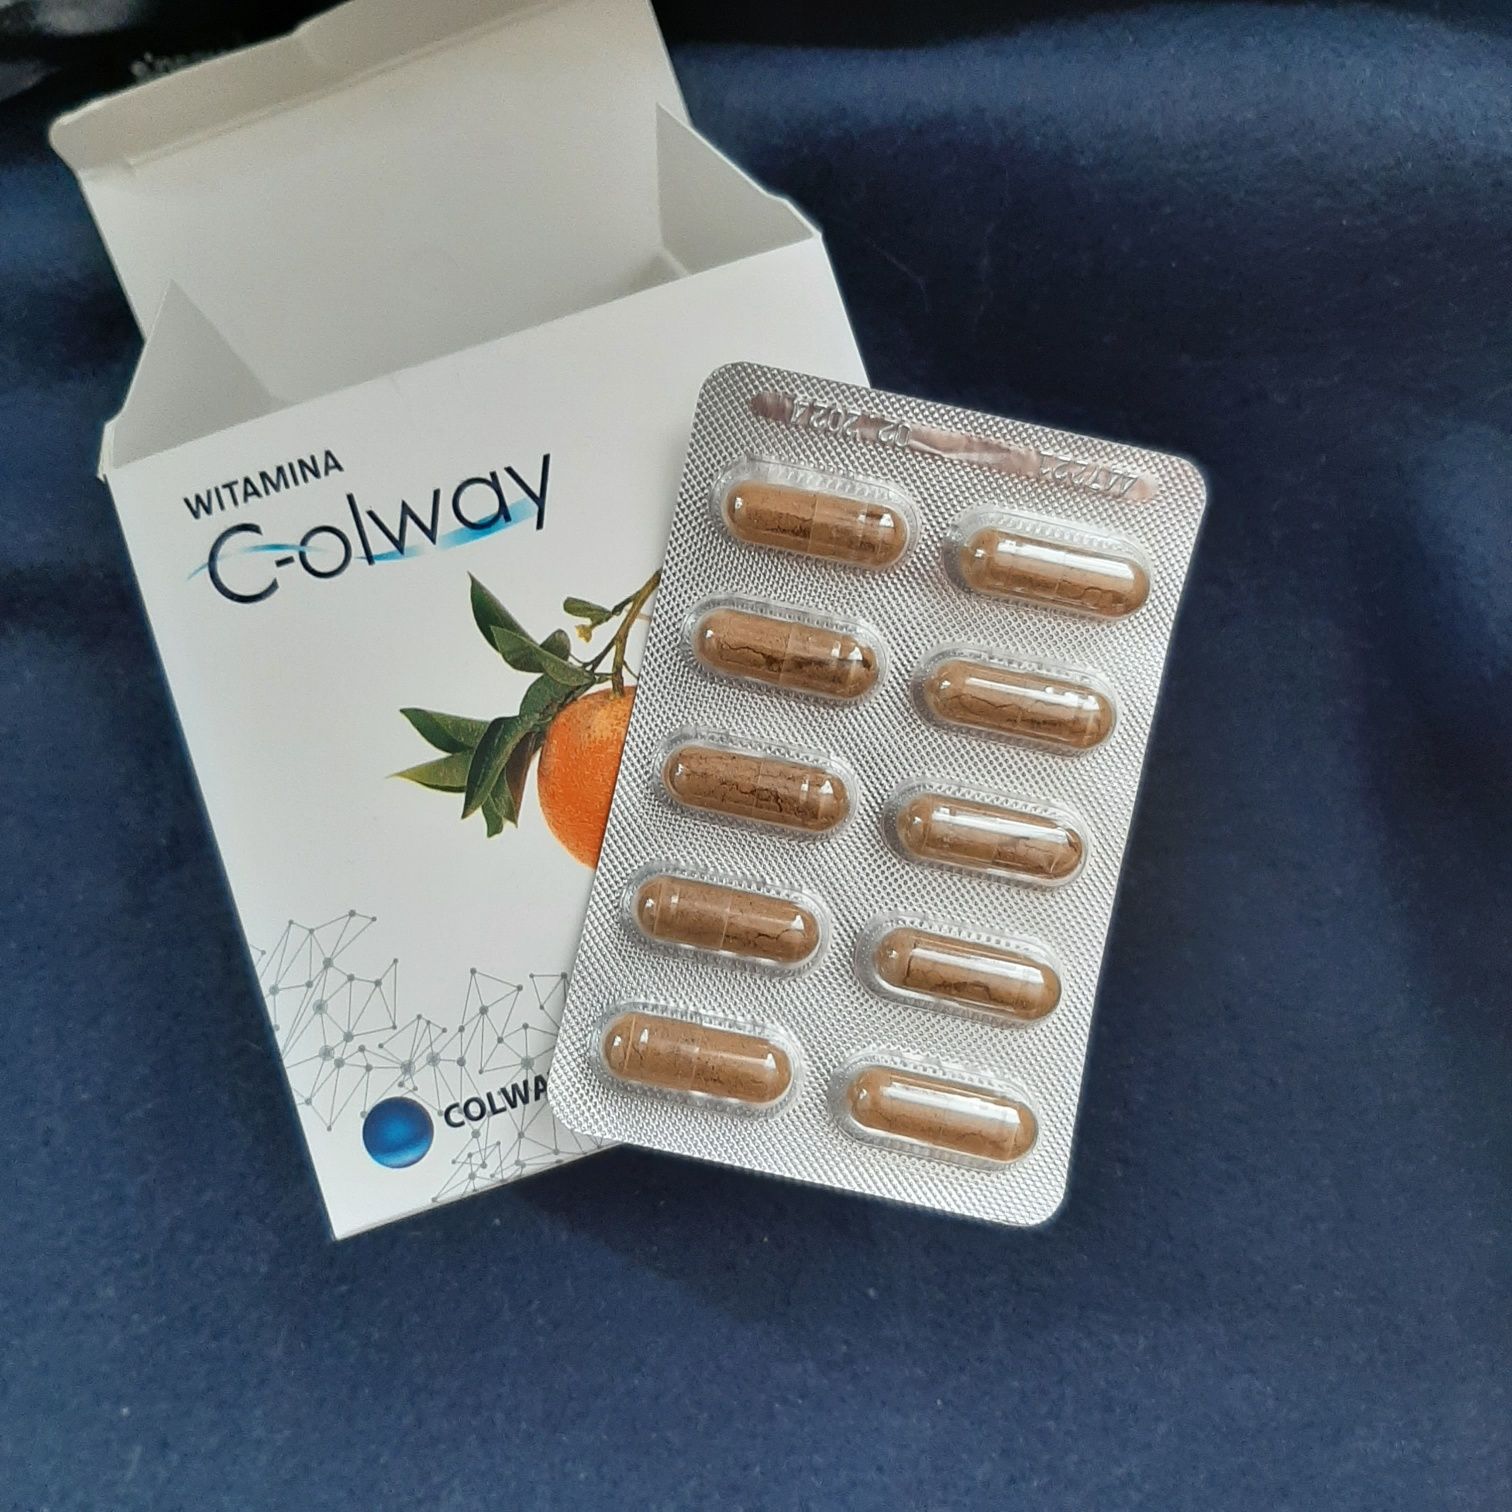 Colway- witamina C